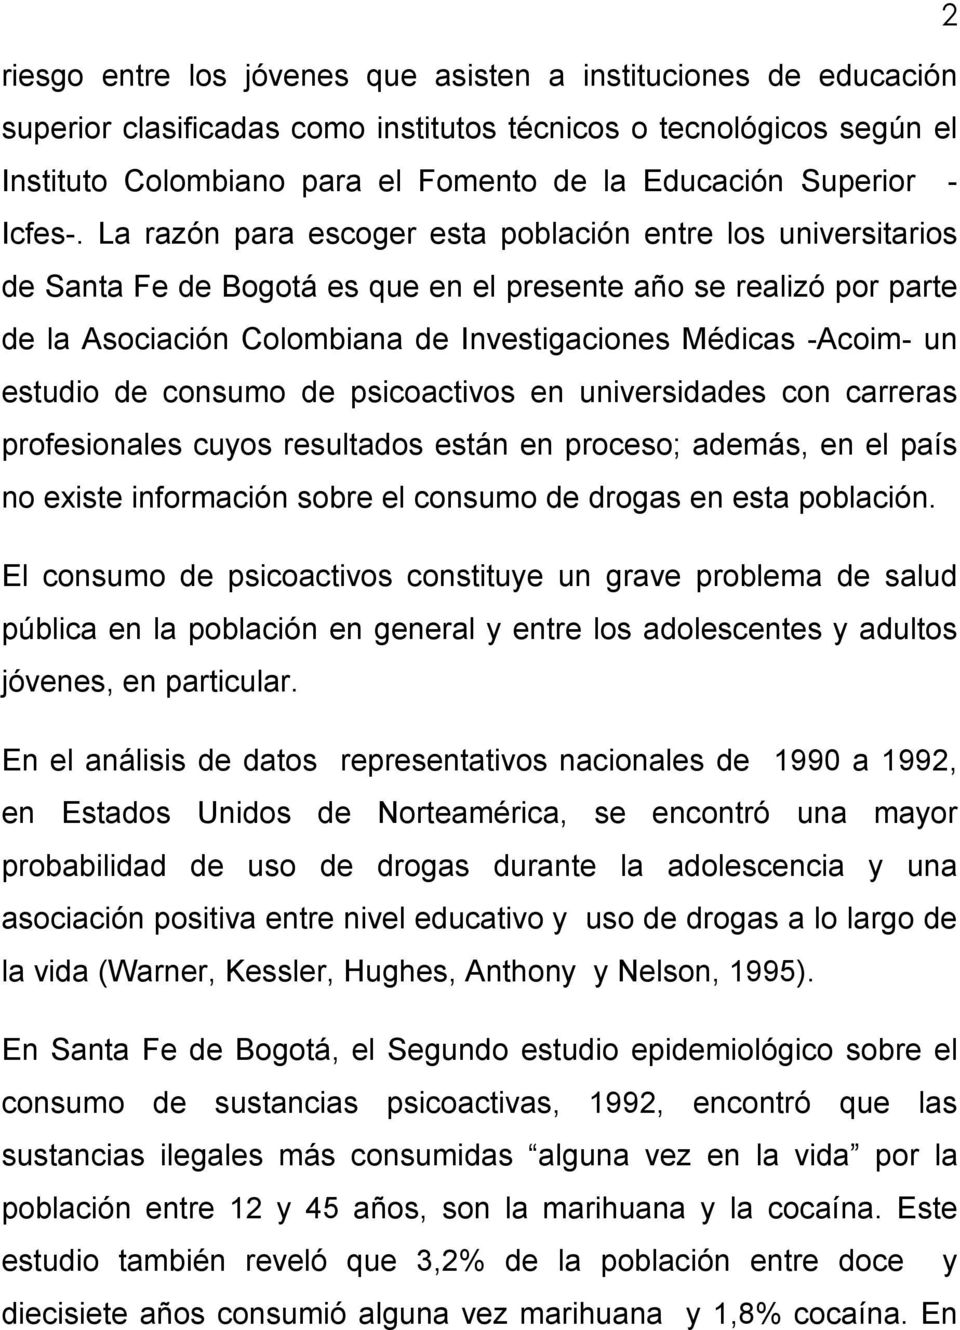 La razón para escoger esta población entre los universitarios de Santa Fe de Bogotá es que en el presente año se realizó por parte de la Asociación Colombiana de Investigaciones Médicas -Acoim- un